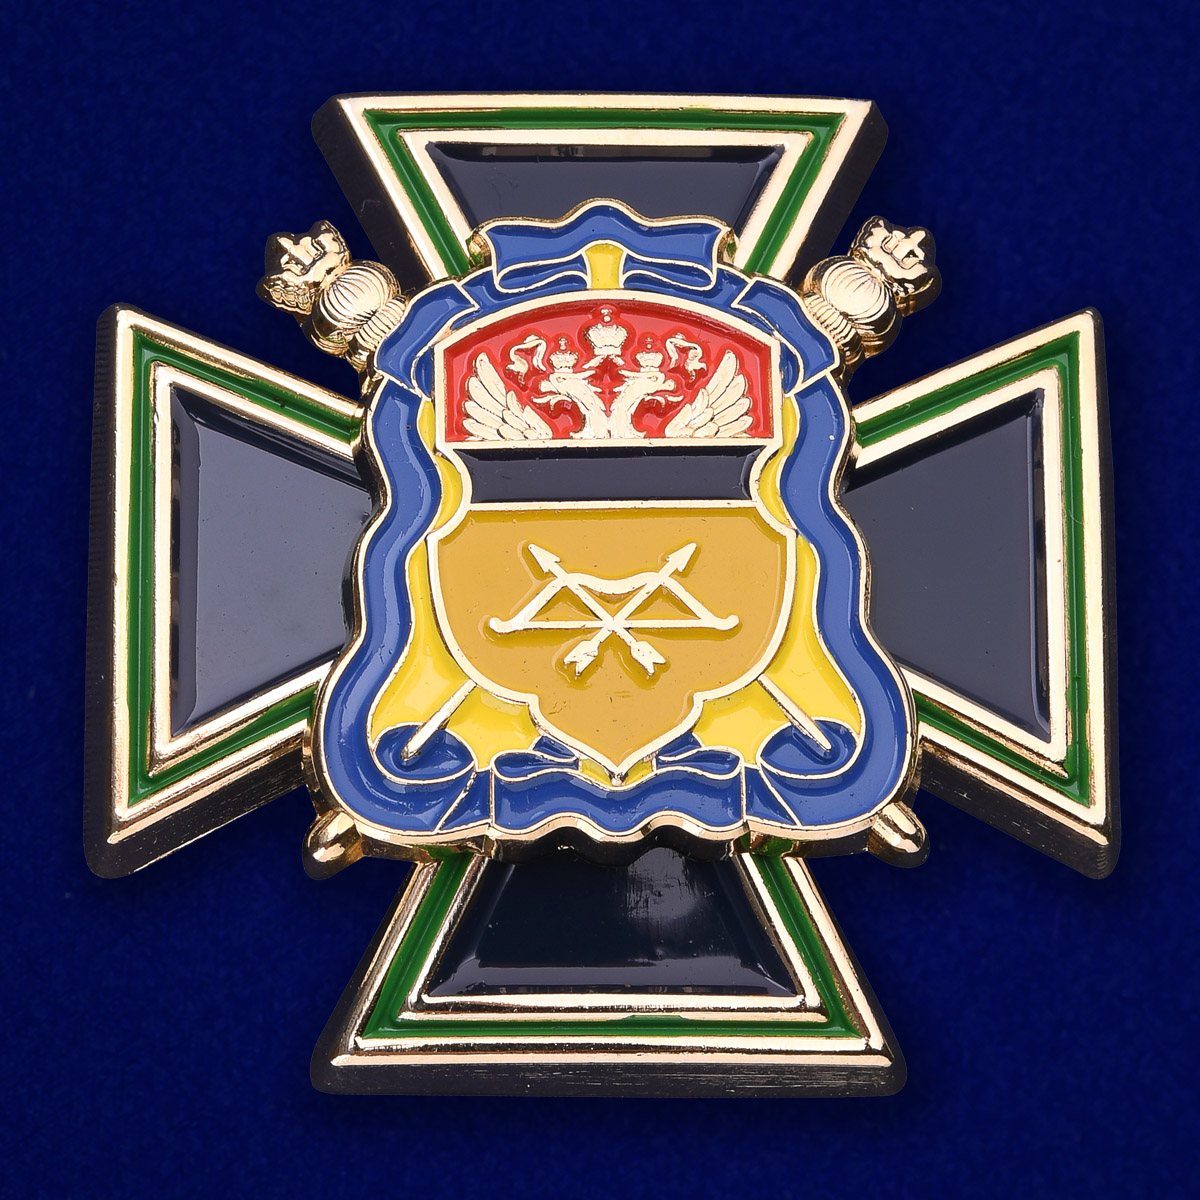 Войсковой крест Оренбургского ВКО "Казачья доблесть" 